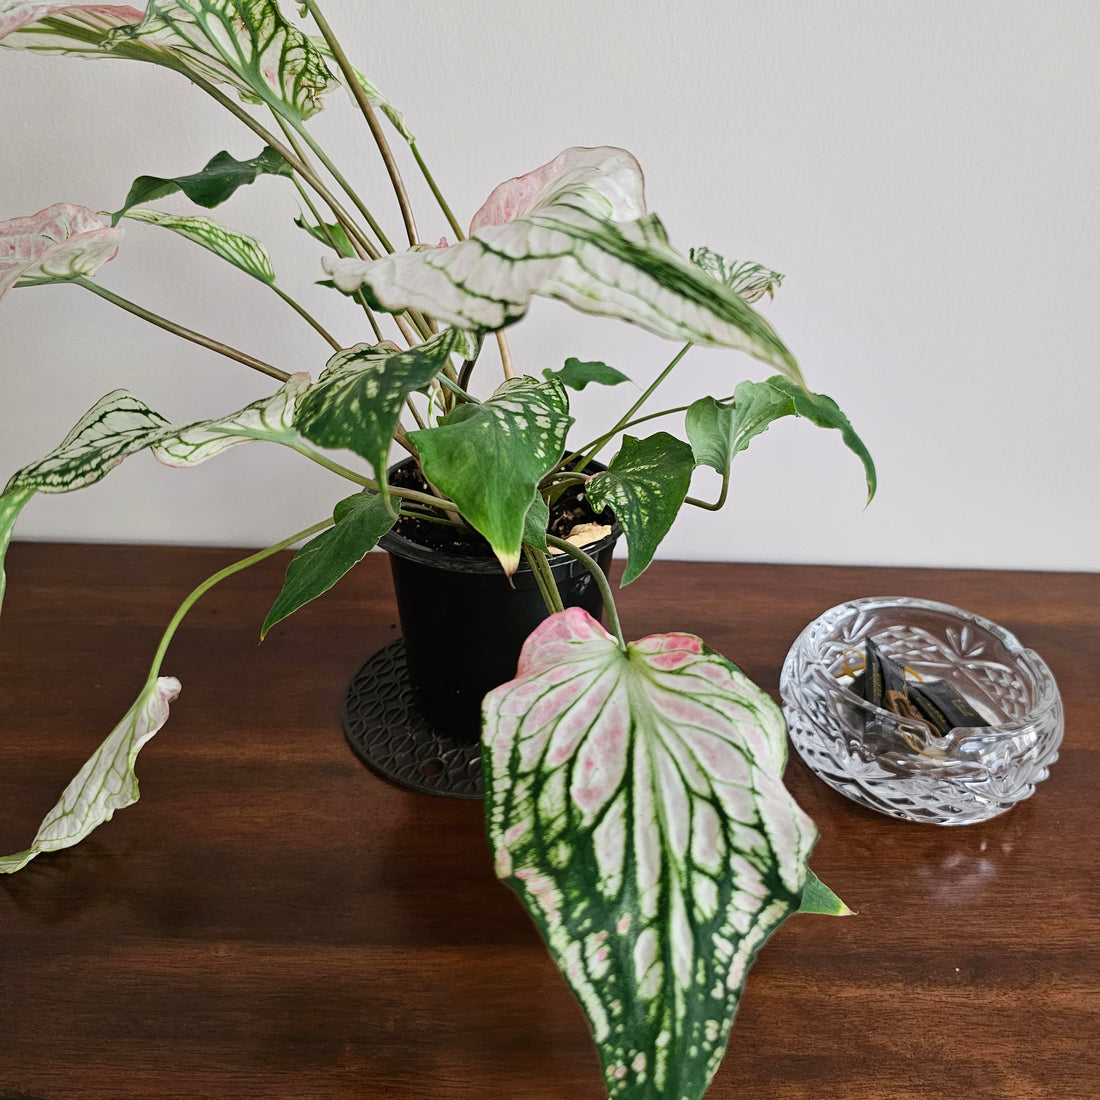 Caladium / Caladium Pink / Araceae / Peppermint Leafy